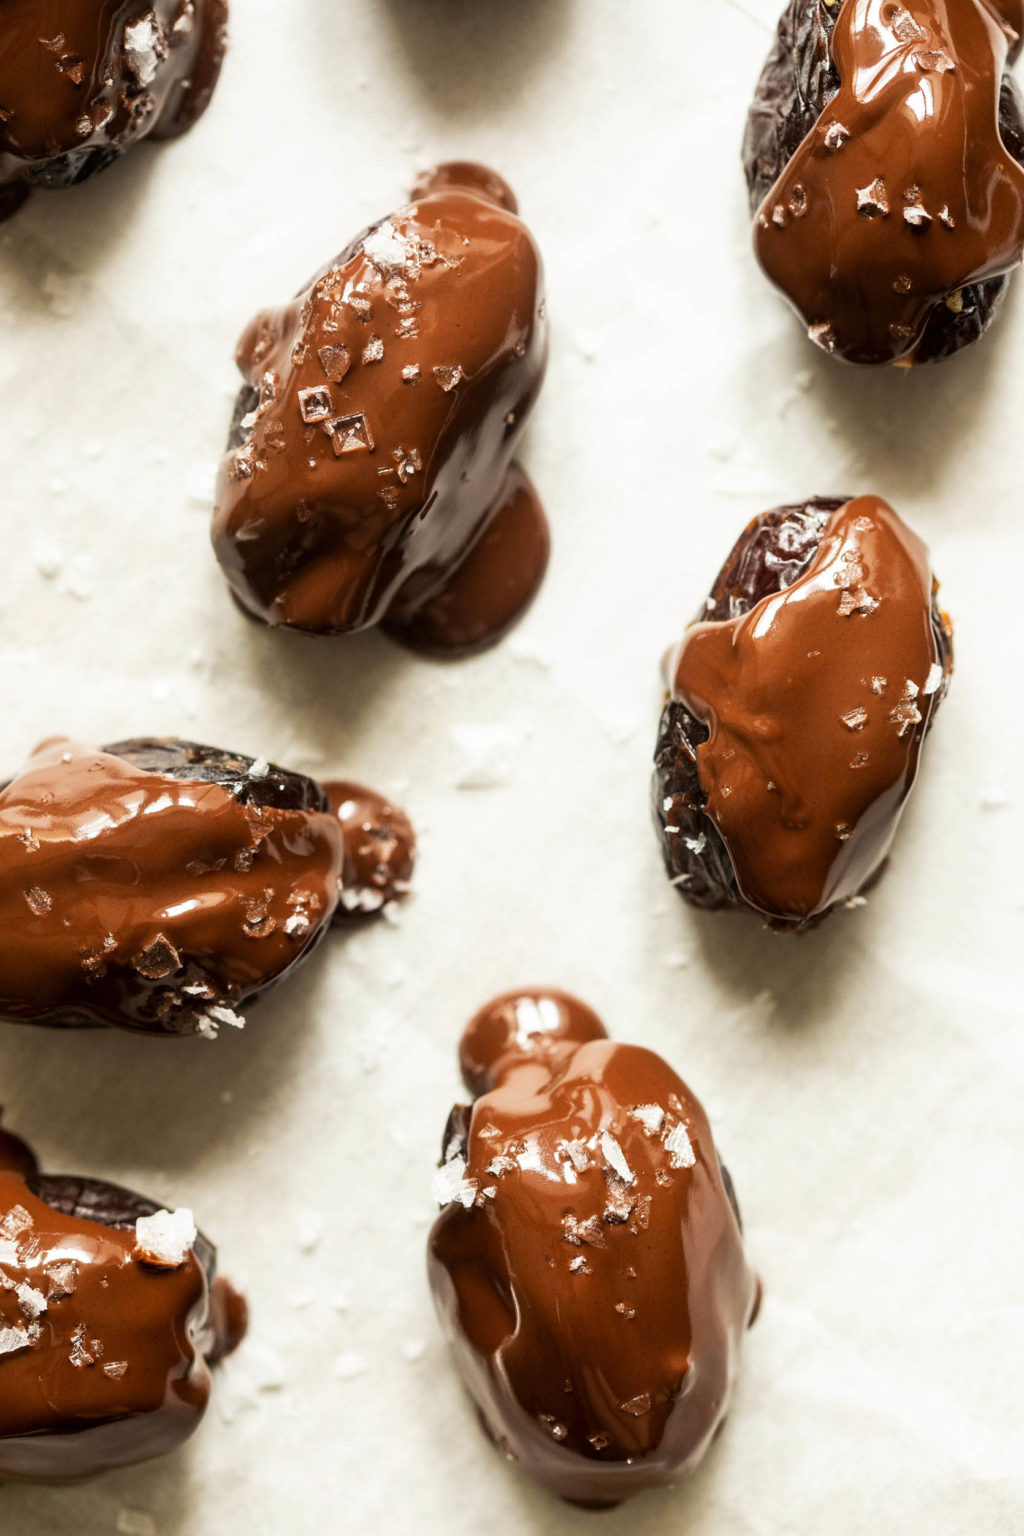 Οι χουρμάδες βουτηγμένοι σε σοκολάτα έχουν πασπαλιστεί με θαλασσινό αλάτι σε ένα φύλλο λευκό λαδόκολλα.